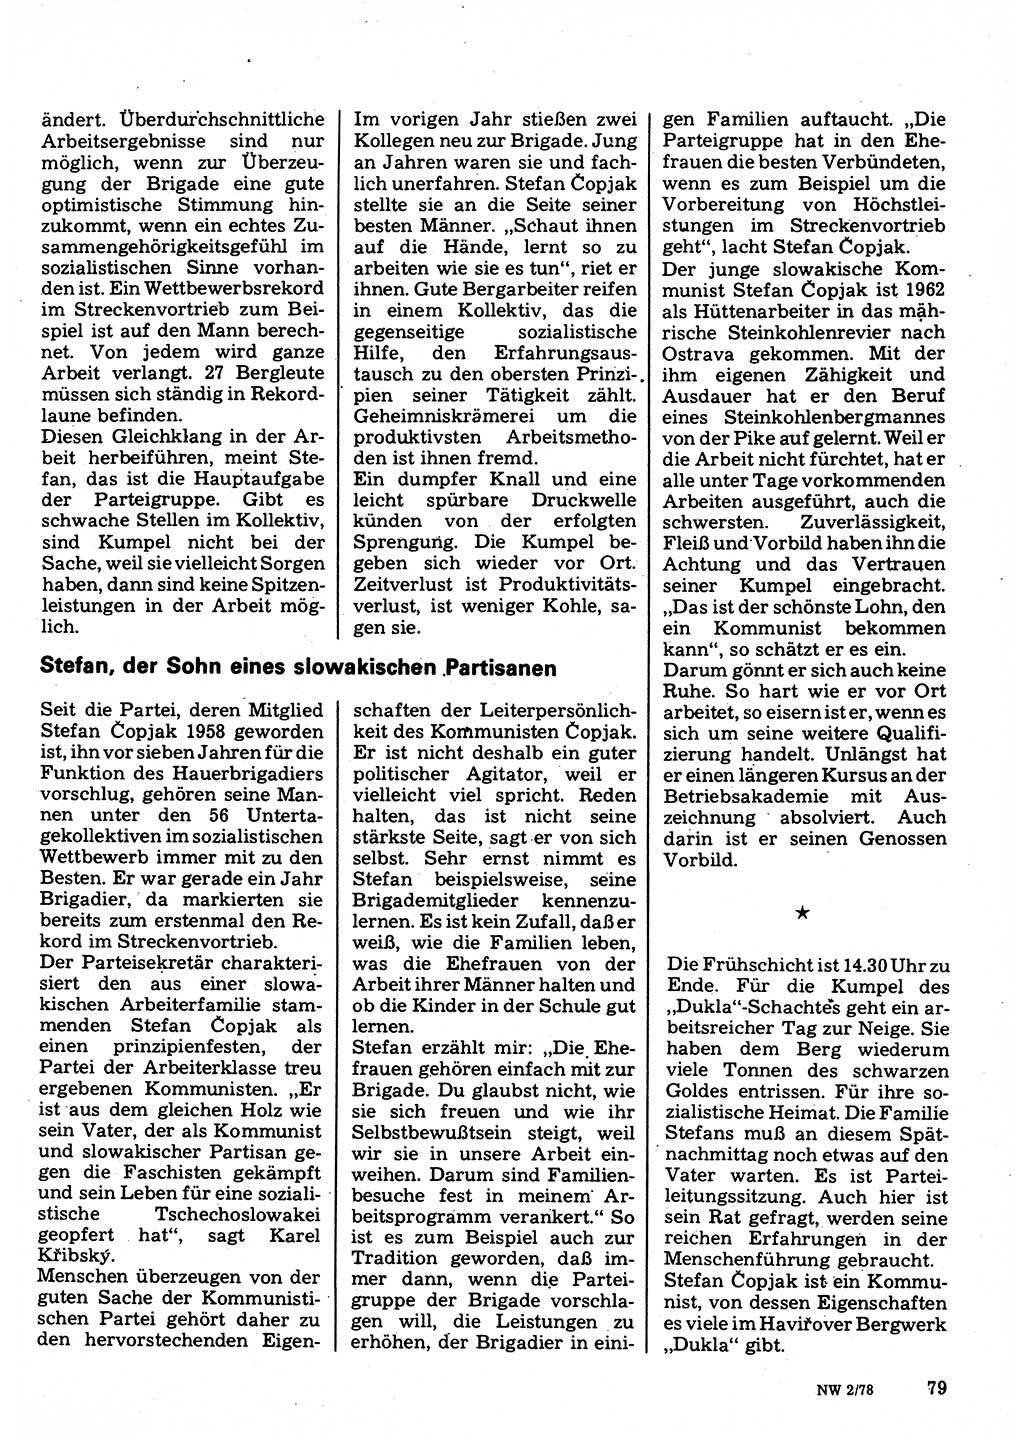 Neuer Weg (NW), Organ des Zentralkomitees (ZK) der SED (Sozialistische Einheitspartei Deutschlands) für Fragen des Parteilebens, 33. Jahrgang [Deutsche Demokratische Republik (DDR)] 1978, Seite 79 (NW ZK SED DDR 1978, S. 79)